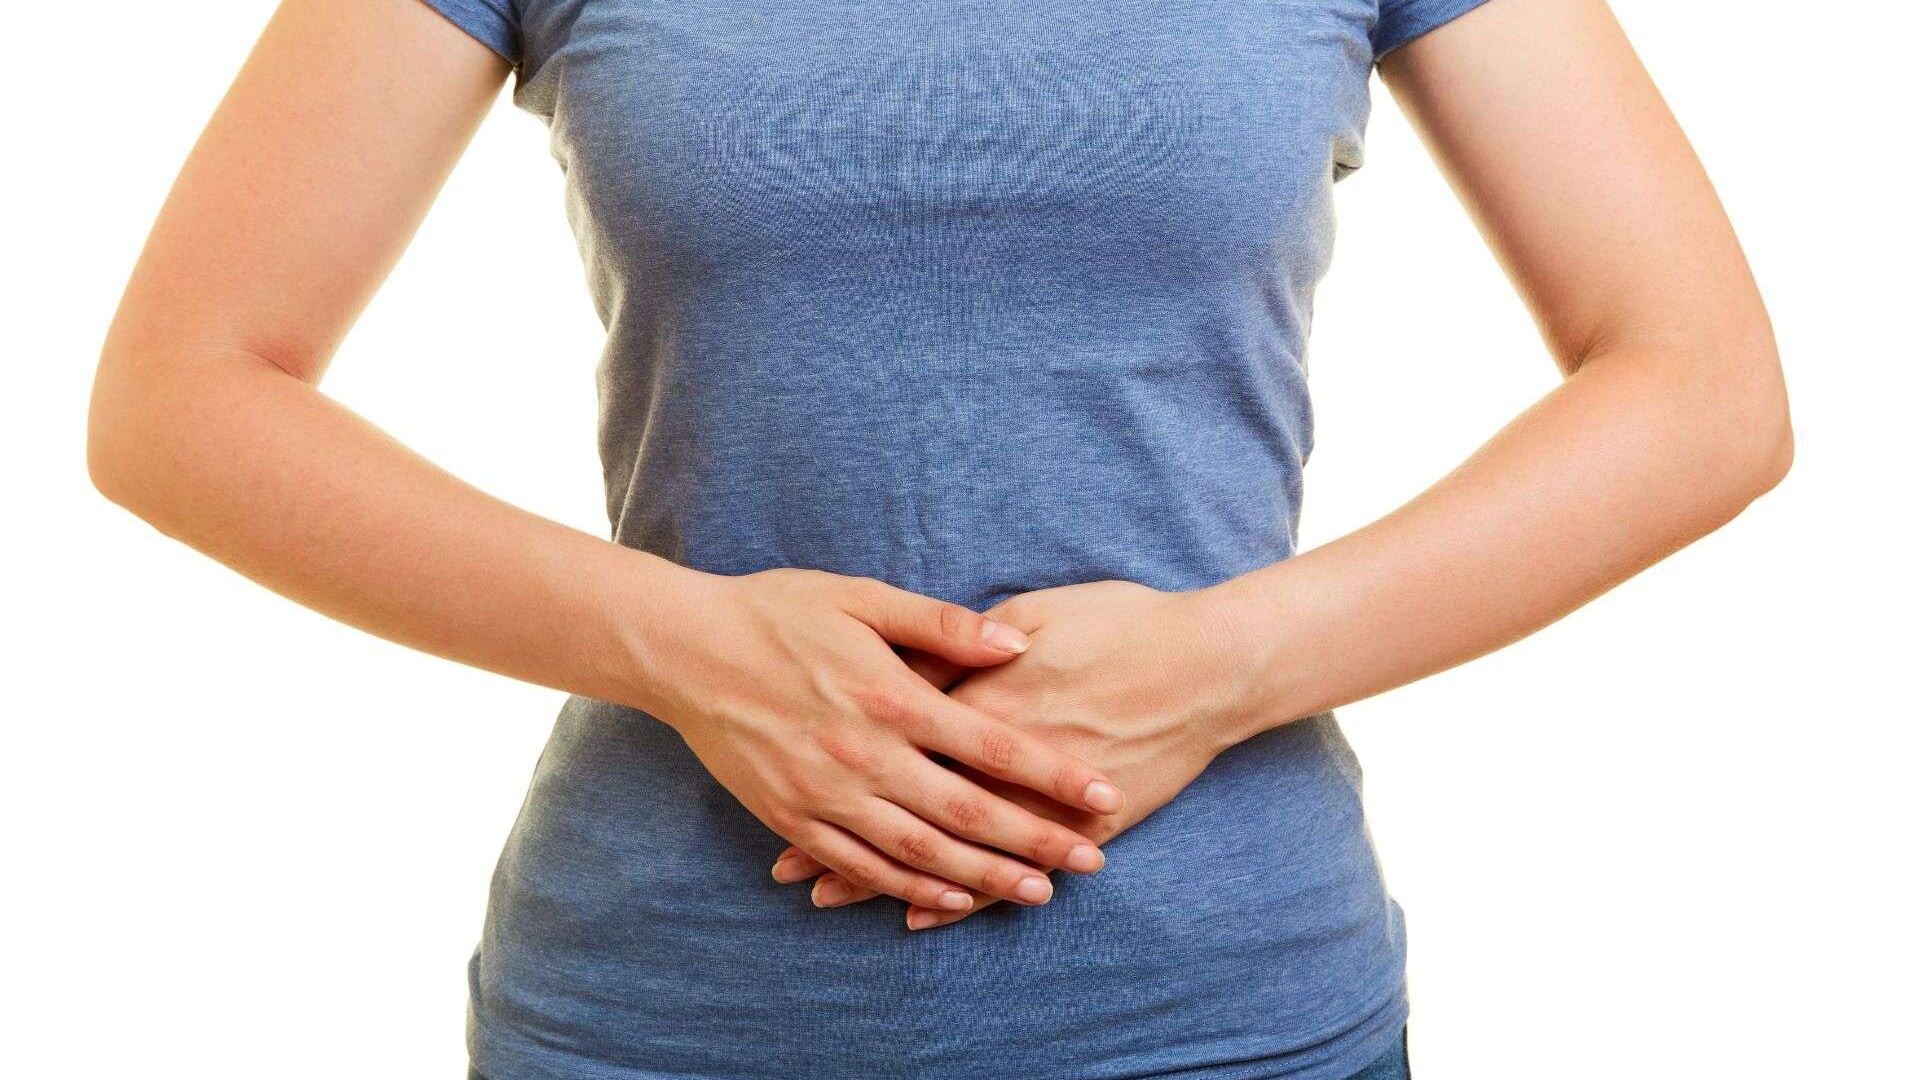 L’ernia iatale può causare dolori nel tratto gastrointestinale